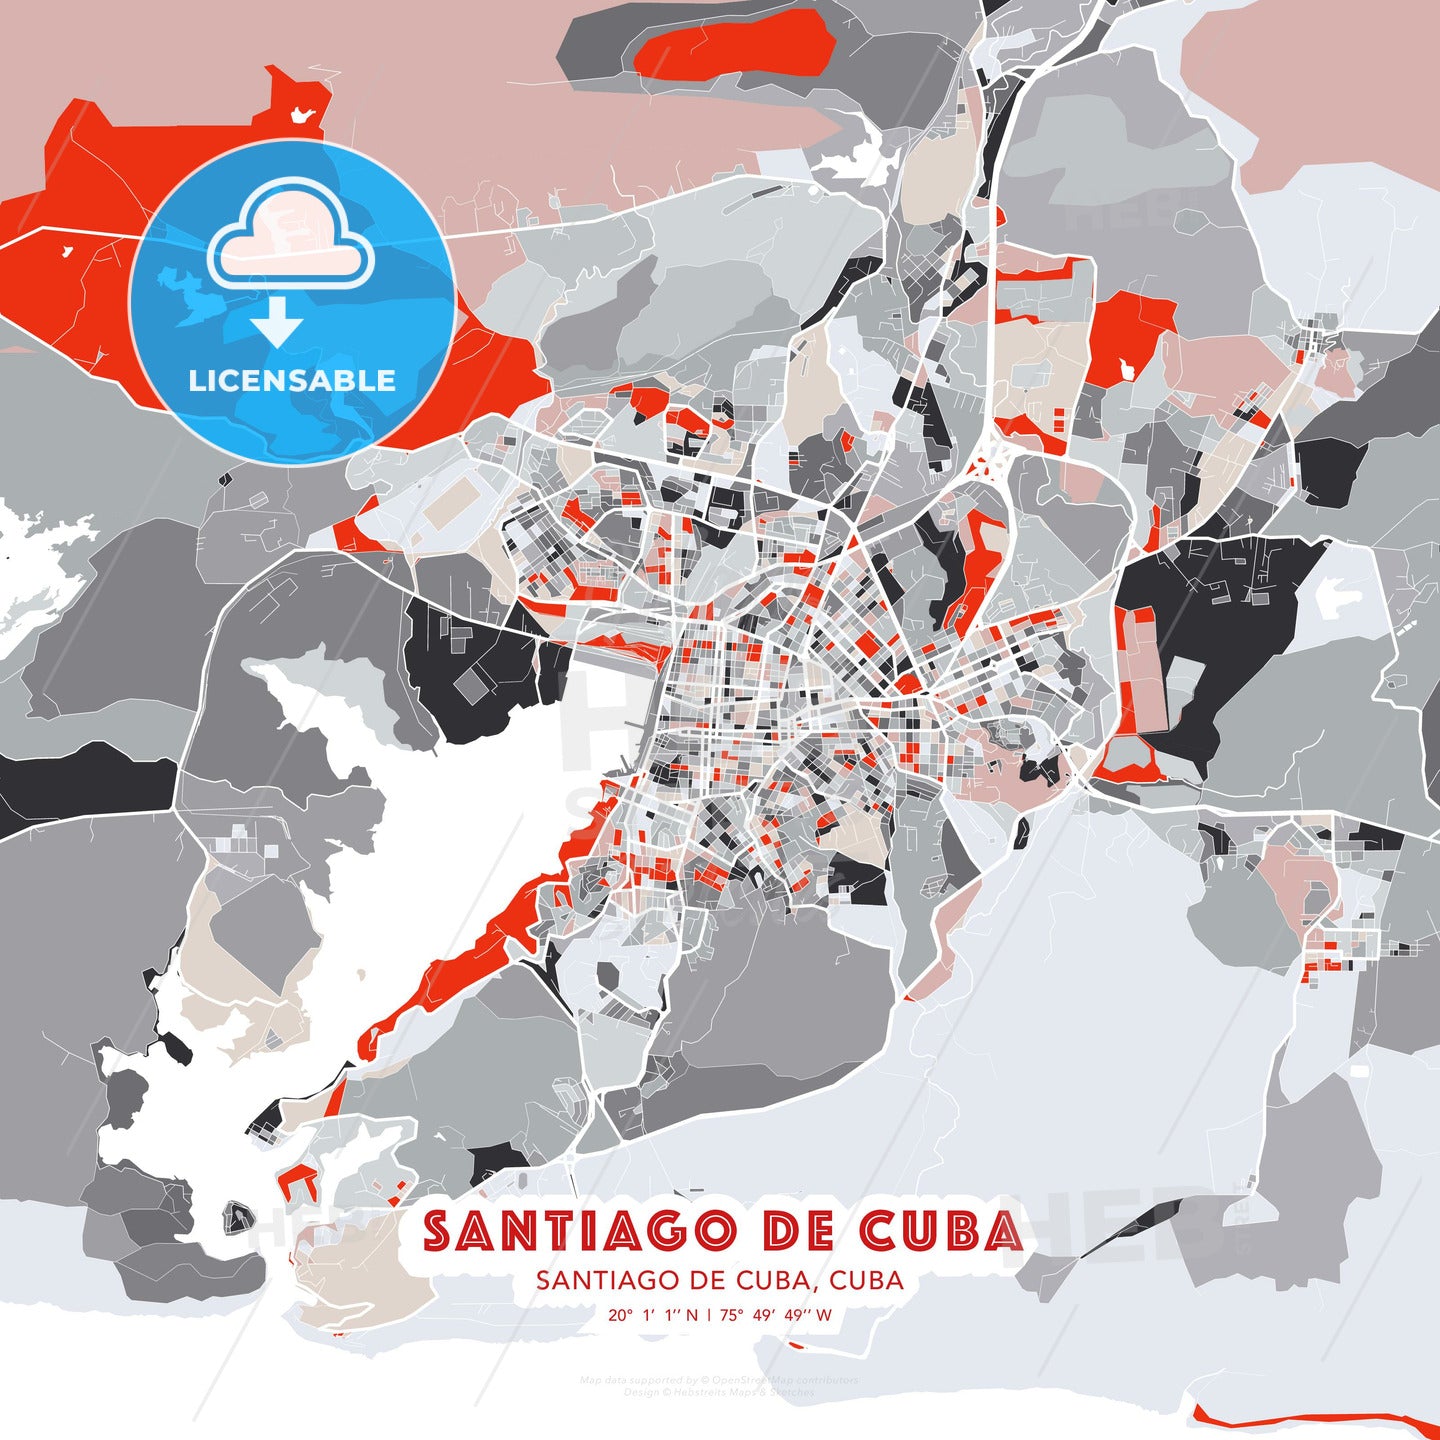 Santiago de Cuba, Santiago de Cuba, Cuba, modern map - HEBSTREITS Sketches